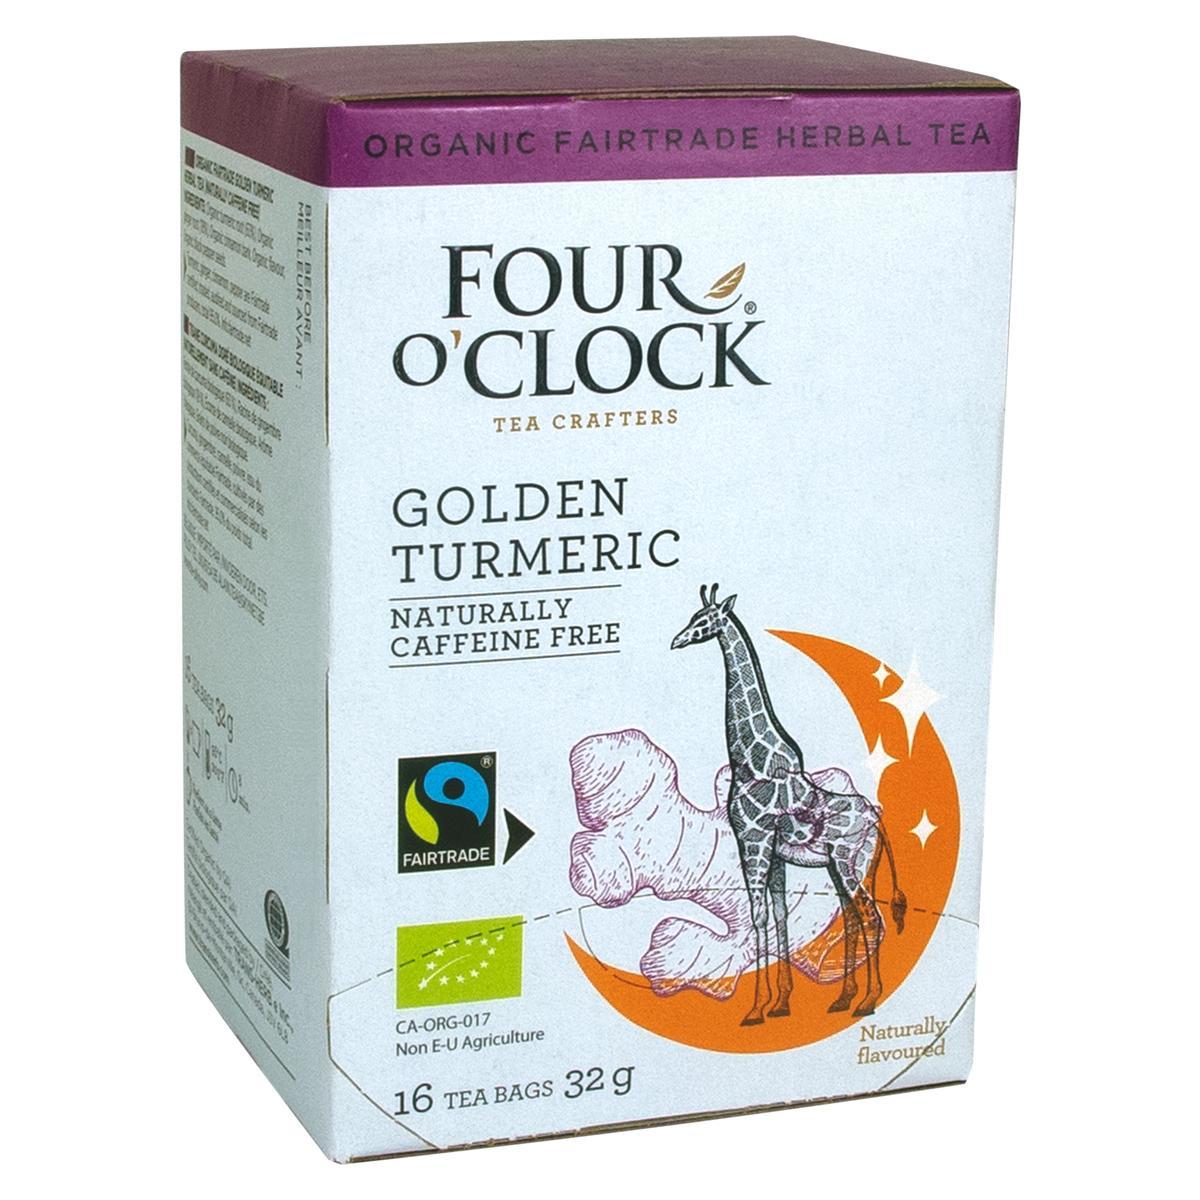 Four O’Clock's Four O'Clock GOLDEN TURMERIC '